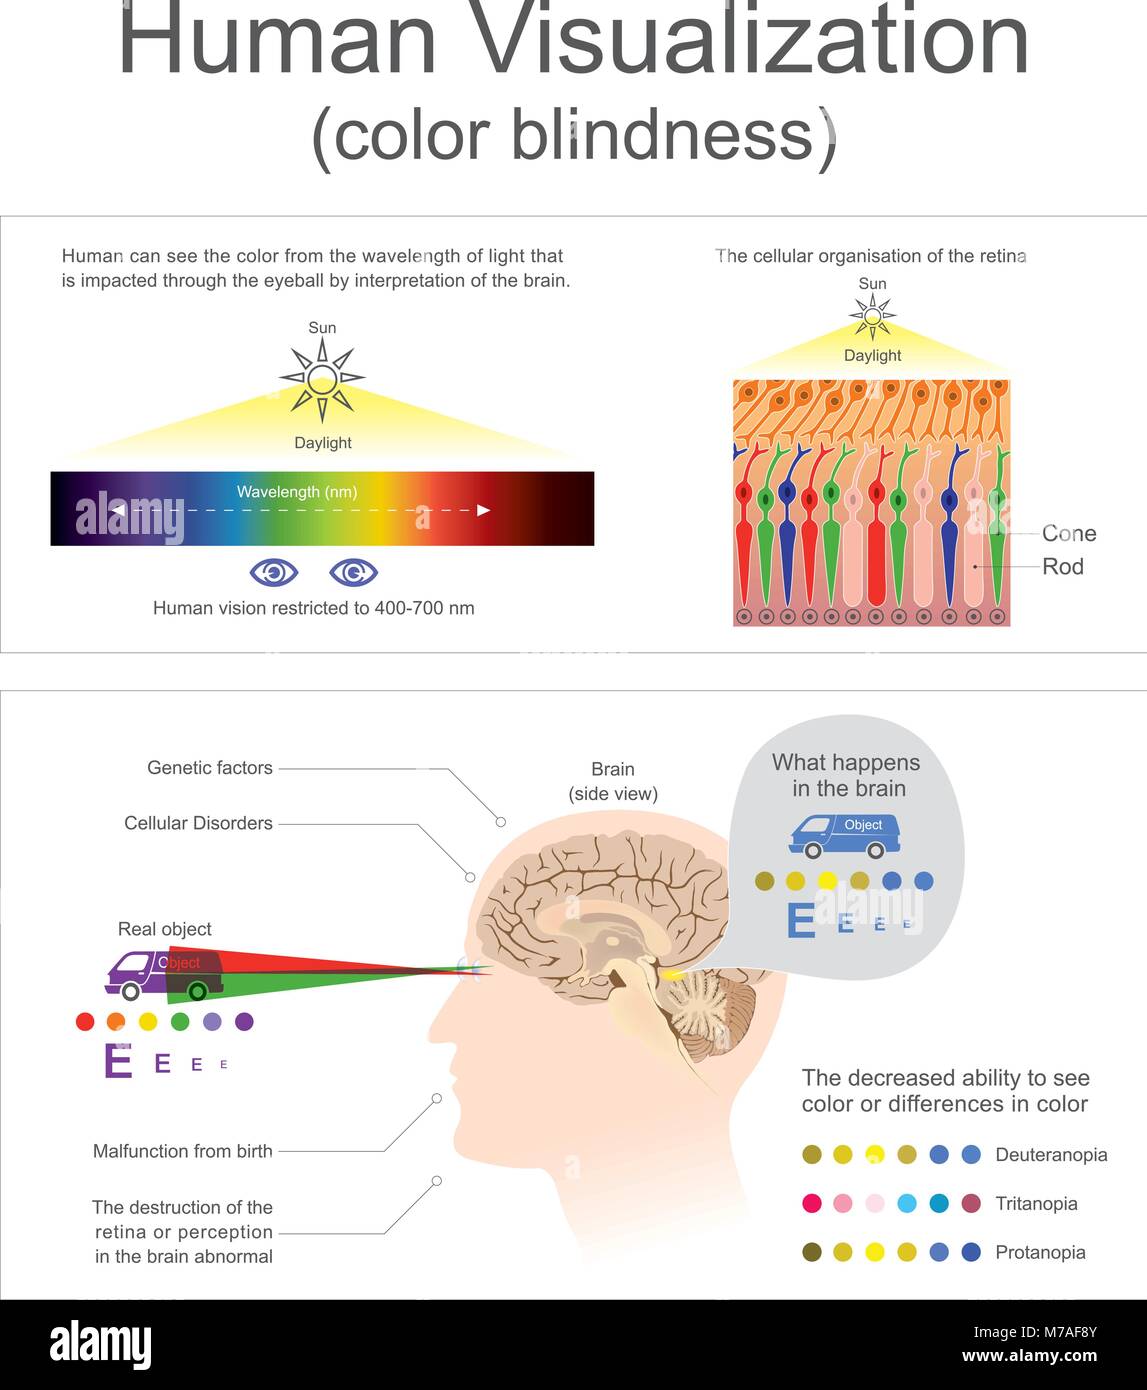 Umano può vedere il colore dalla lunghezza d'onda di luce la distruzione della retina o la percezione nel cervello anormale Illustrazione Vettoriale